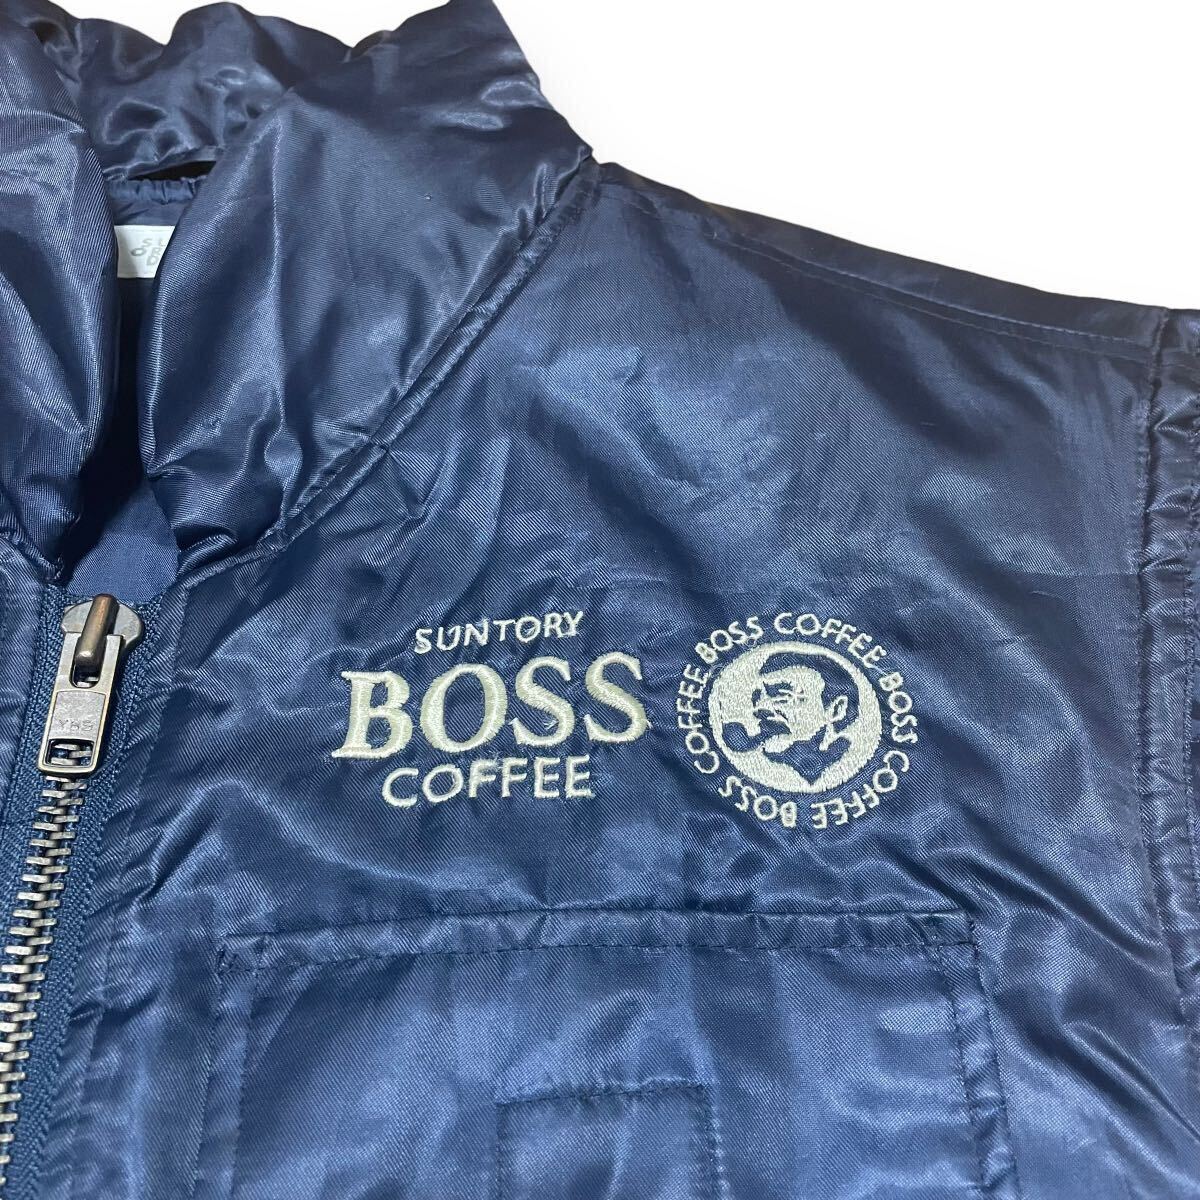  Suntory BOSS Jean лучший темно-синий свободный размер Boss Jean с хлопком внешний вышивка Novelty Logo рабочая одежда бирка choki